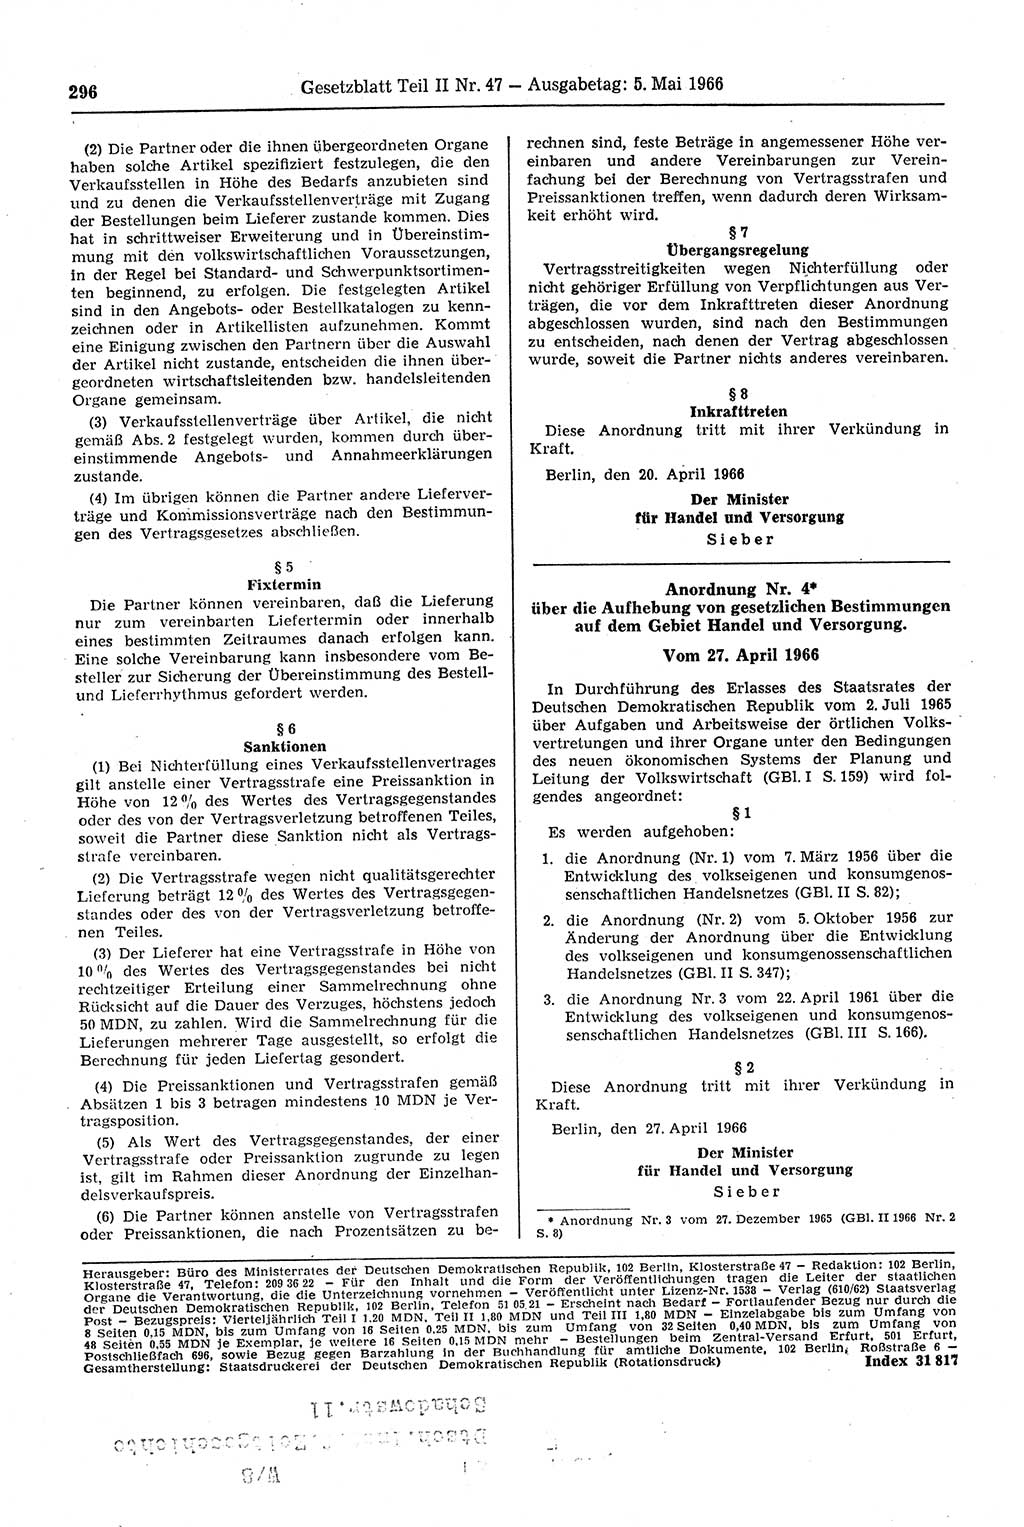 Gesetzblatt (GBl.) der Deutschen Demokratischen Republik (DDR) Teil ⅠⅠ 1966, Seite 296 (GBl. DDR ⅠⅠ 1966, S. 296)